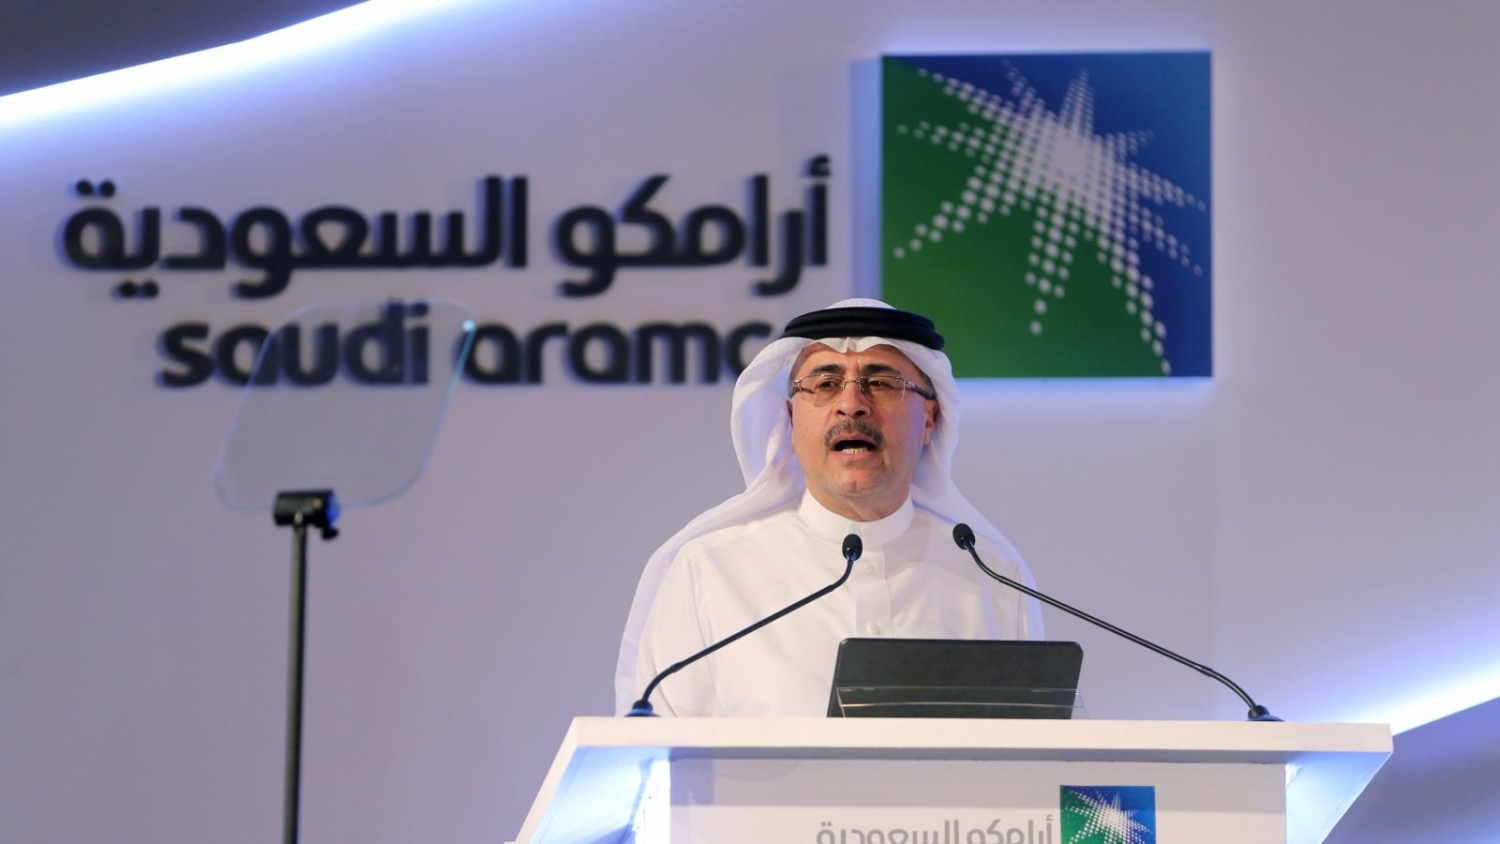 Vì sao Saudi Aramco muốn chuyển hướng kinh doanh?